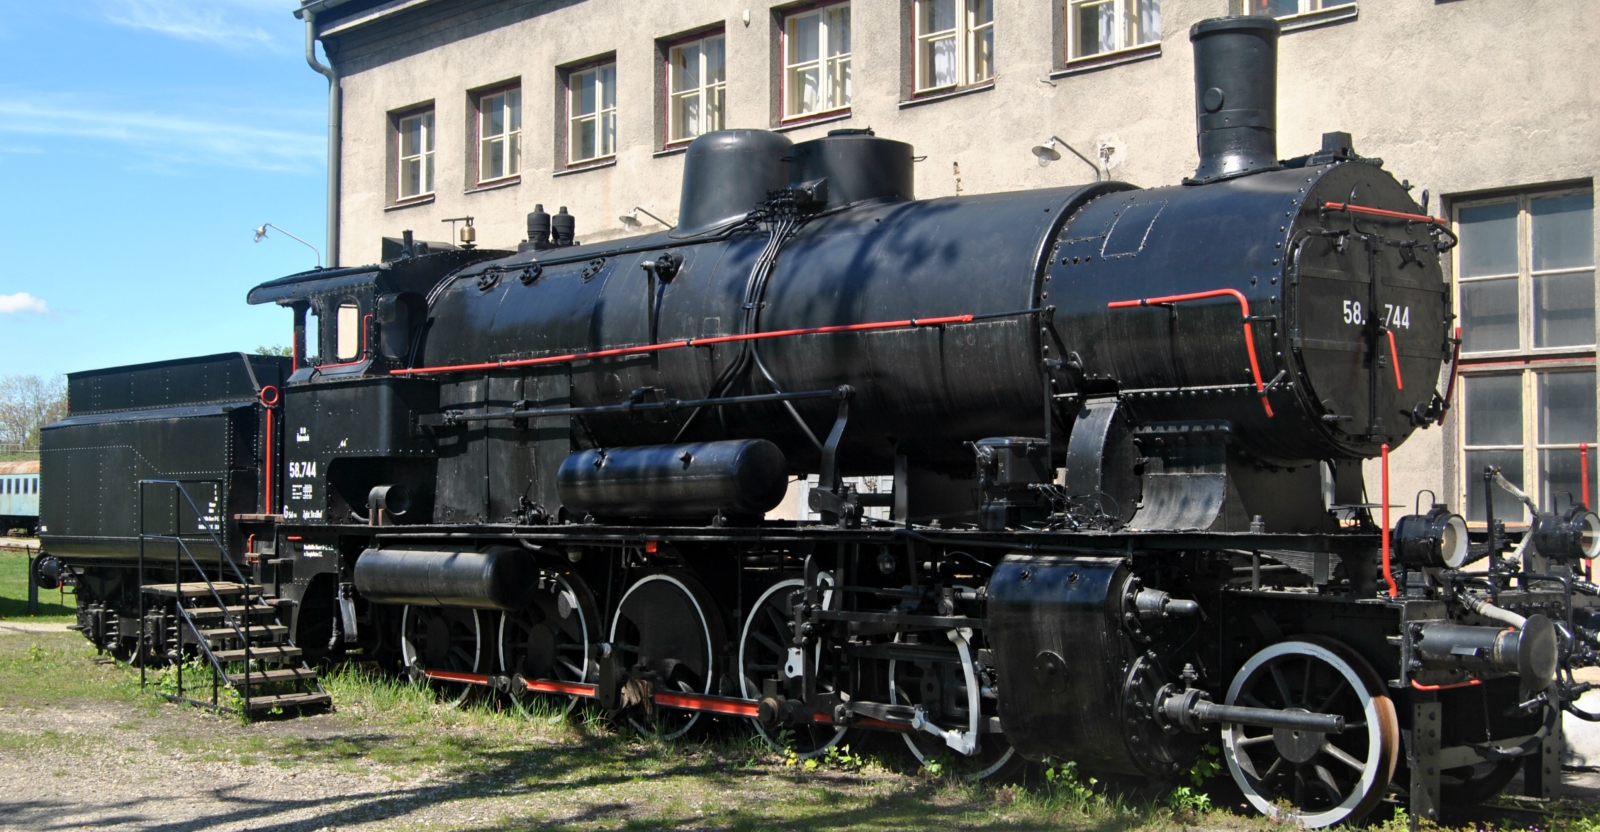 58.744 in the Strasshof Railway Museum